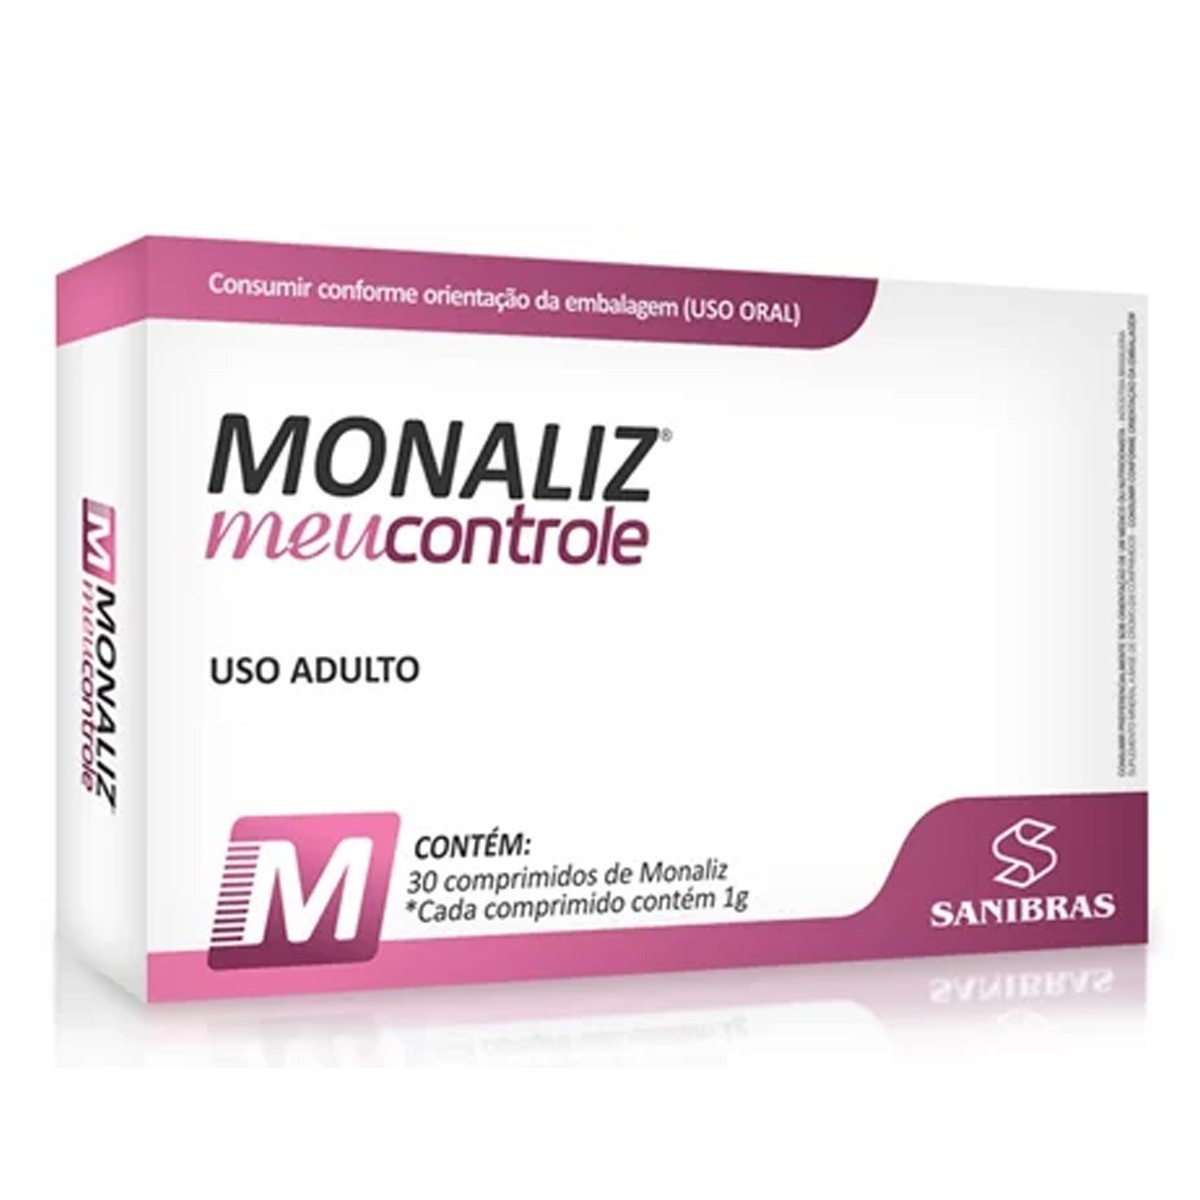 Monaliz - Meu Controle é o novo redutor de apetite lançado pela Sanibras.  Com ativos concentrados para uso de somente 1 comprimido de 1g por dia,  Monaliz, By Drogaria Popular Nova Vista